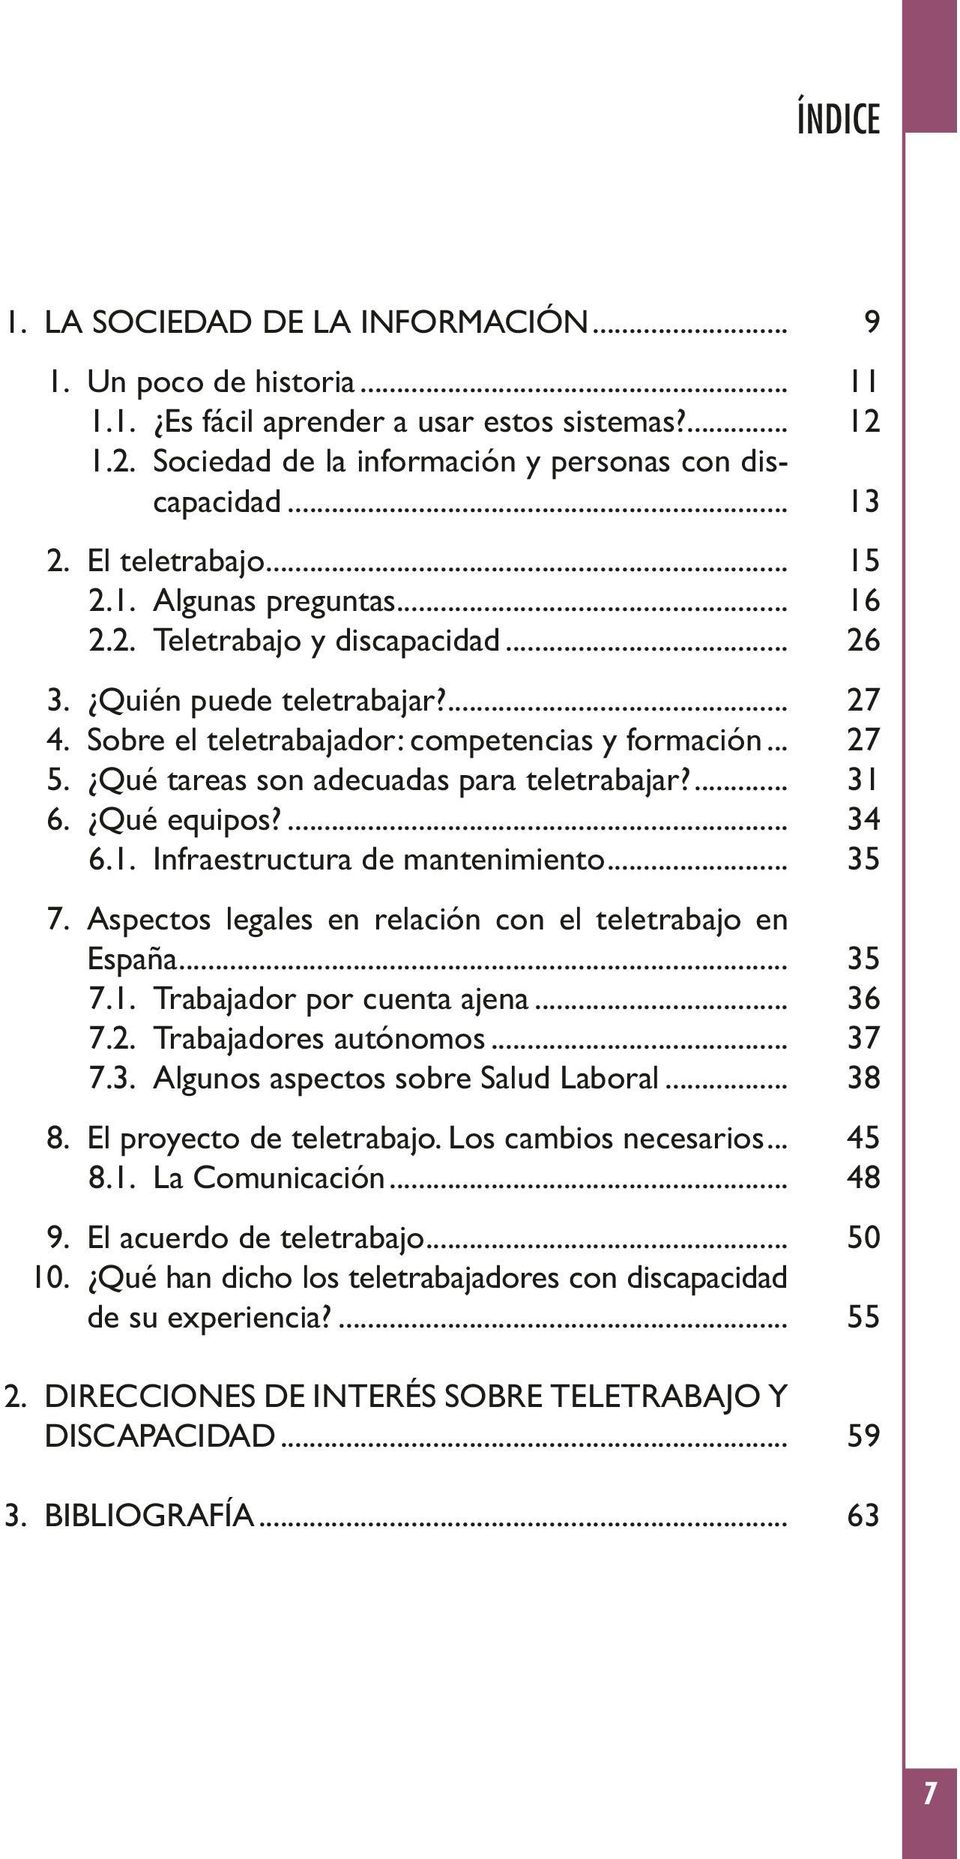 ... 6. Qué equipos?... 6.1. Infraestructura de mantenimiento... 7. Aspectos legales en relación con el teletrabajo en España... 7.1. Trabajador por cuenta ajena... 7.2. Trabajadores autónomos... 7.3.